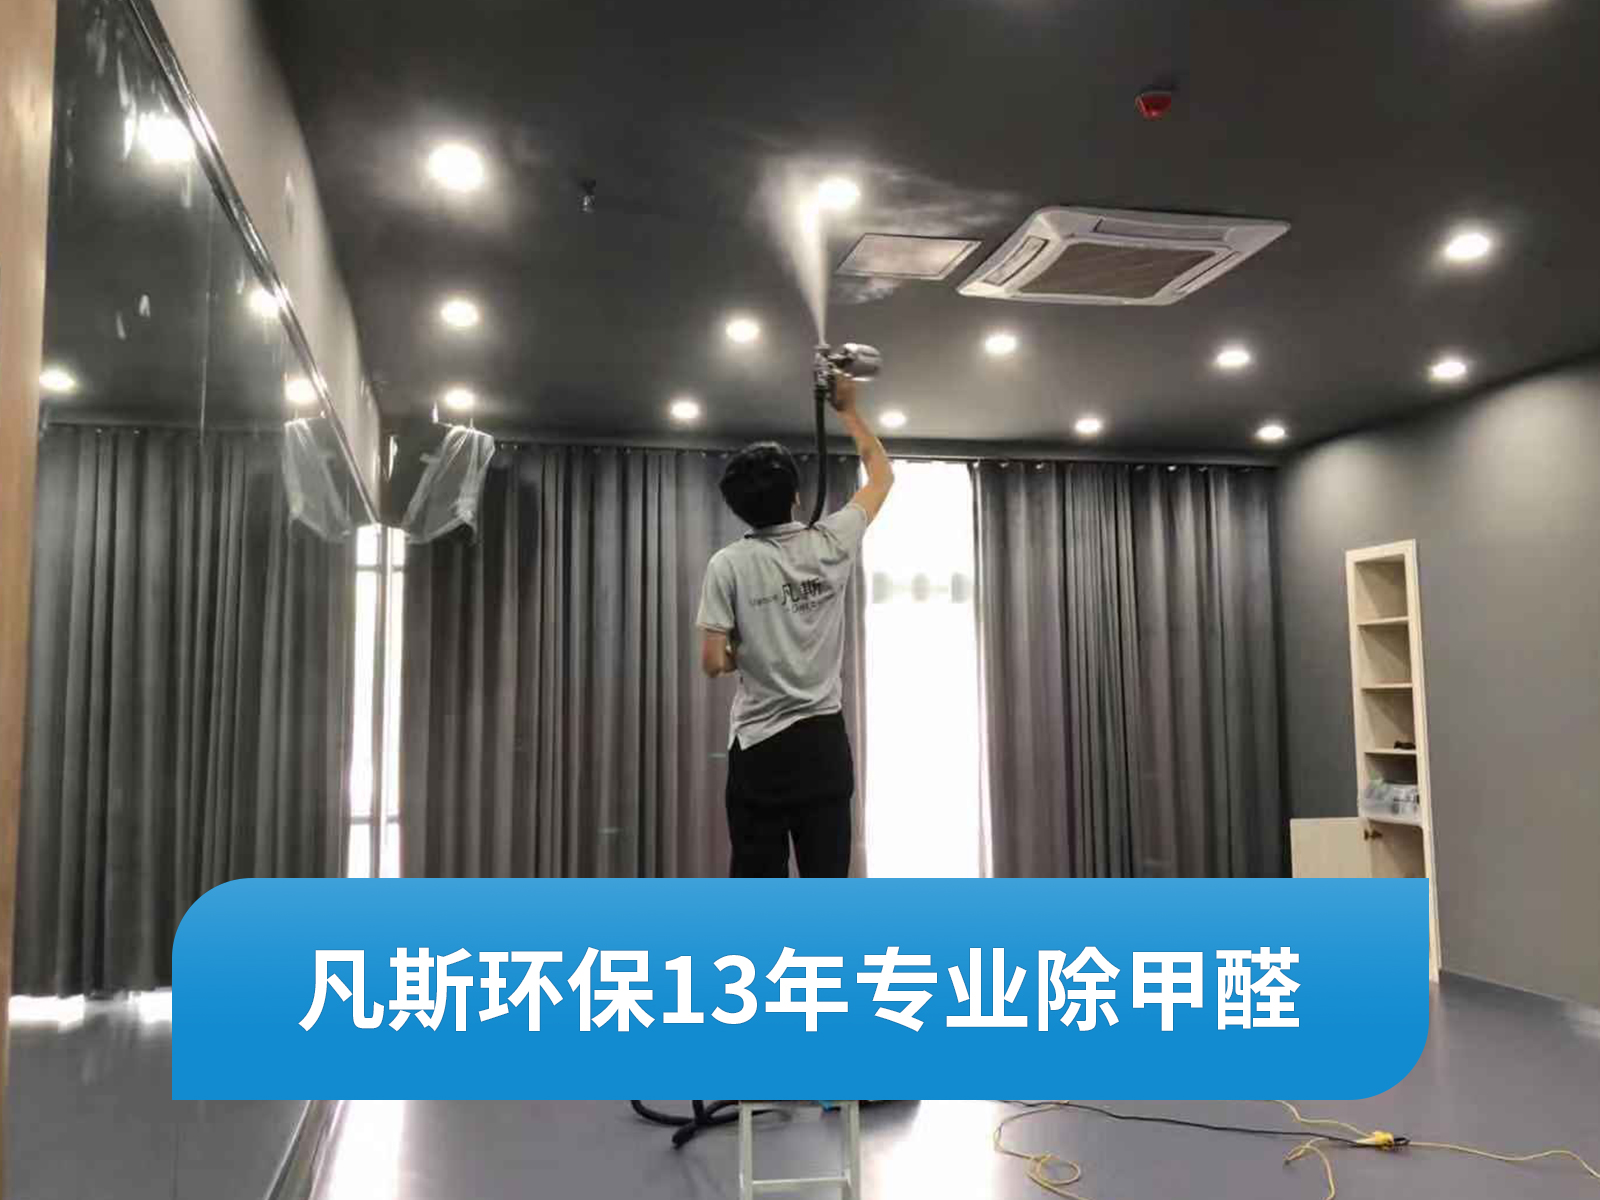 【上海凡斯环保资讯】室内空气污染检测治理 首先需要对甲醛有很好的了解